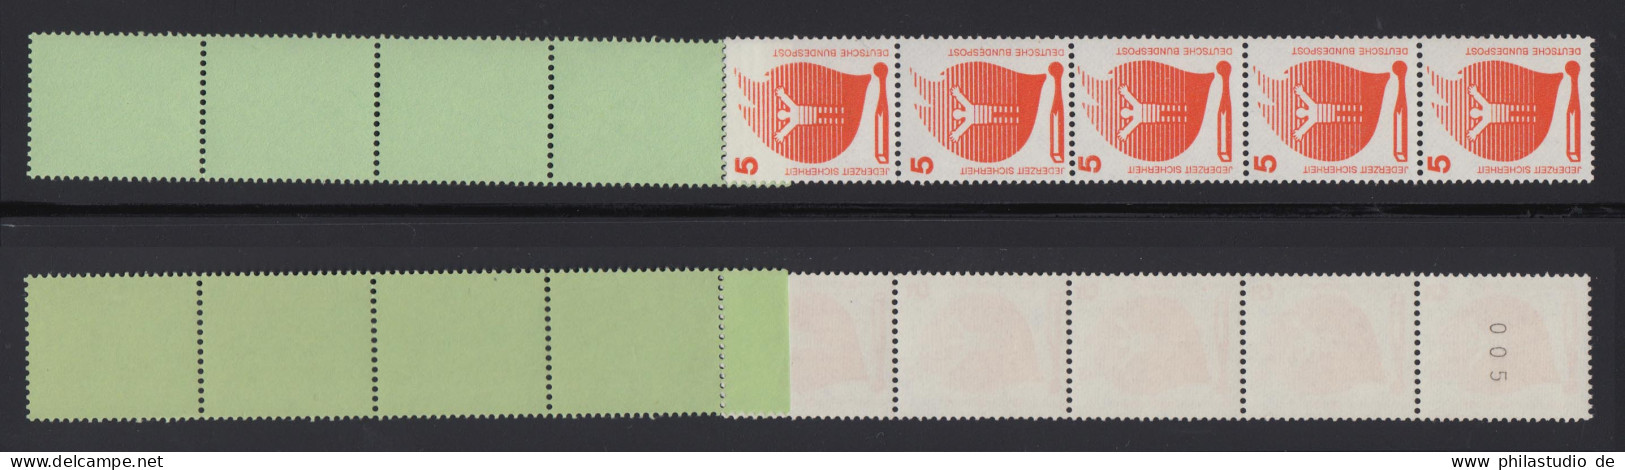 Bund 694 A RE 5+4 Grün/dextrin Schwarze Nr. Unfallverhütung 5 Pf Postfrisch - Rollenmarken